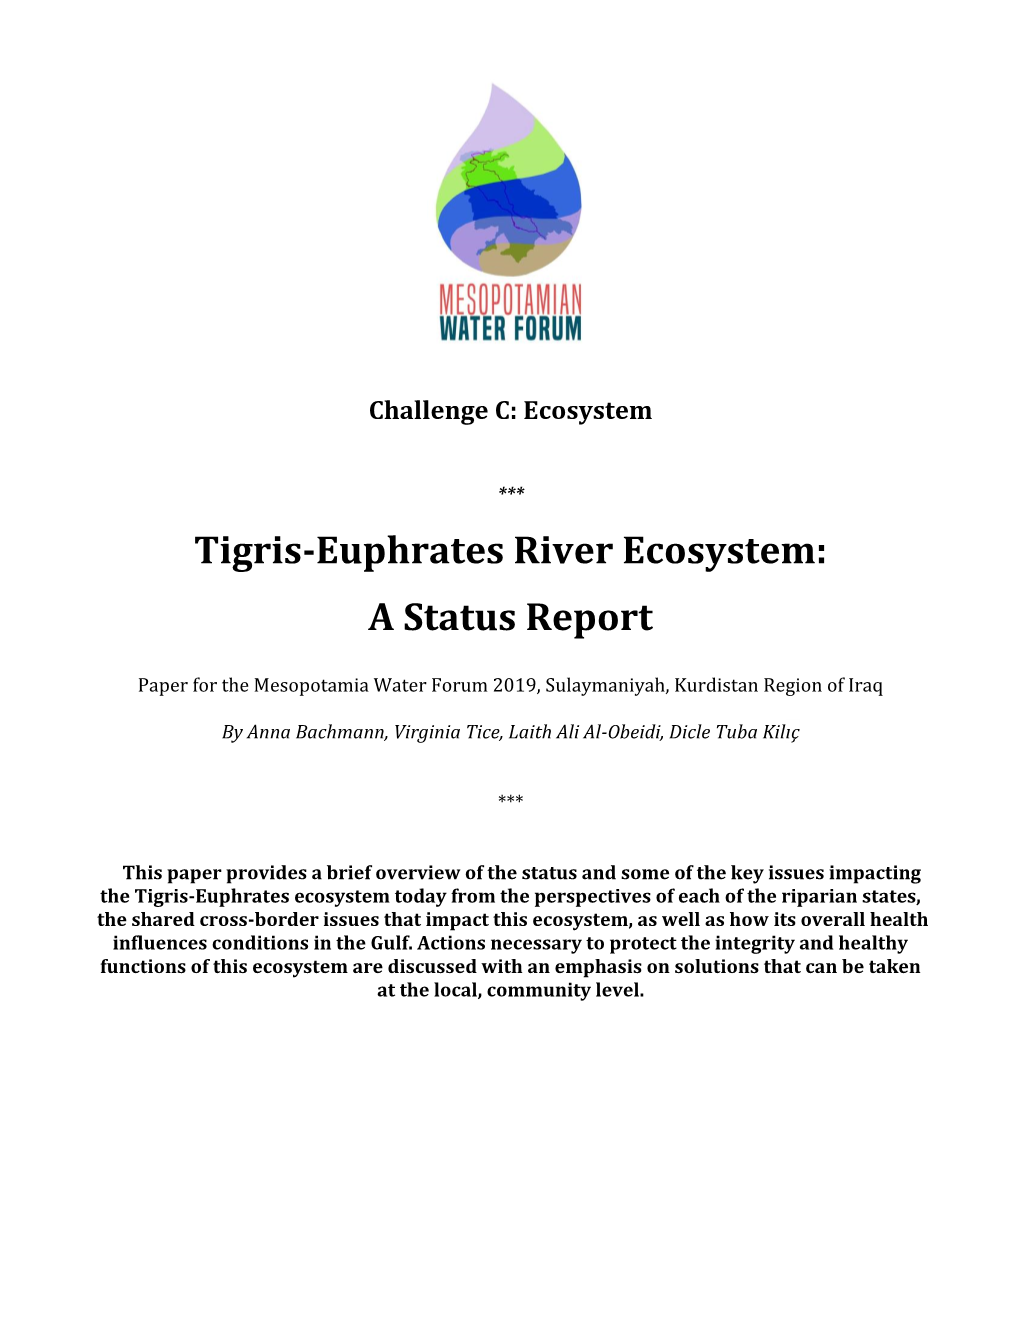 Tigris-Euphrates River Ecosystem: a Status Report